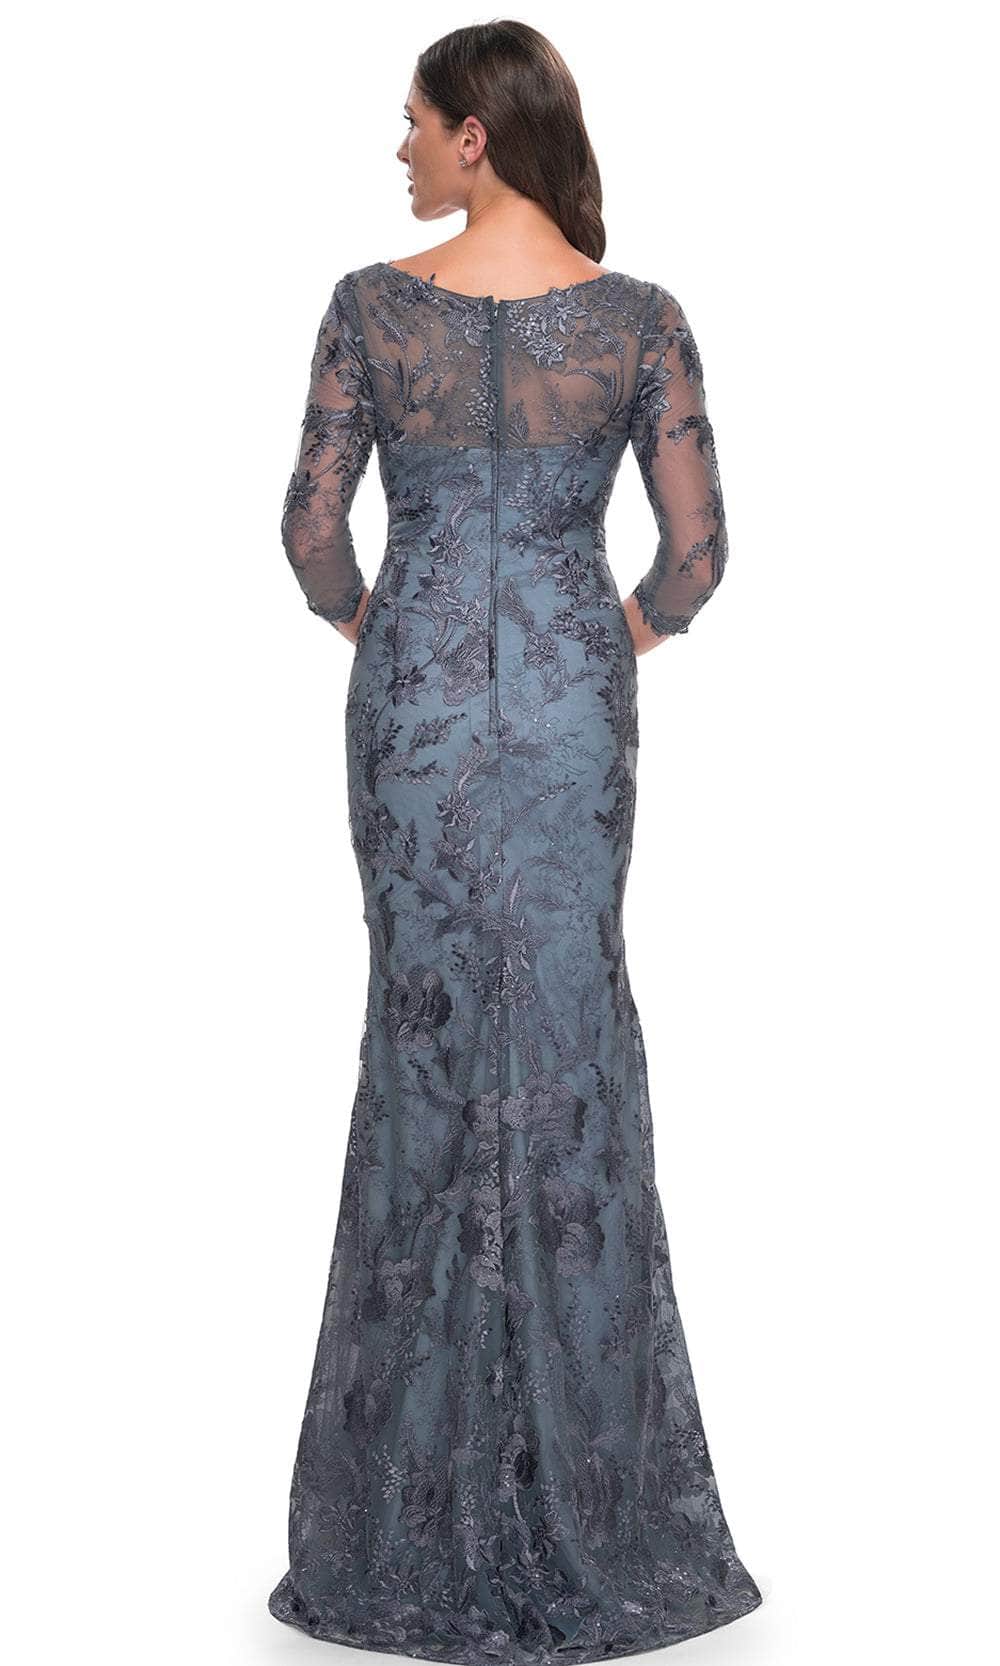 La Femme 30130 - Floral Sheath Formal Dress Evening Dresses